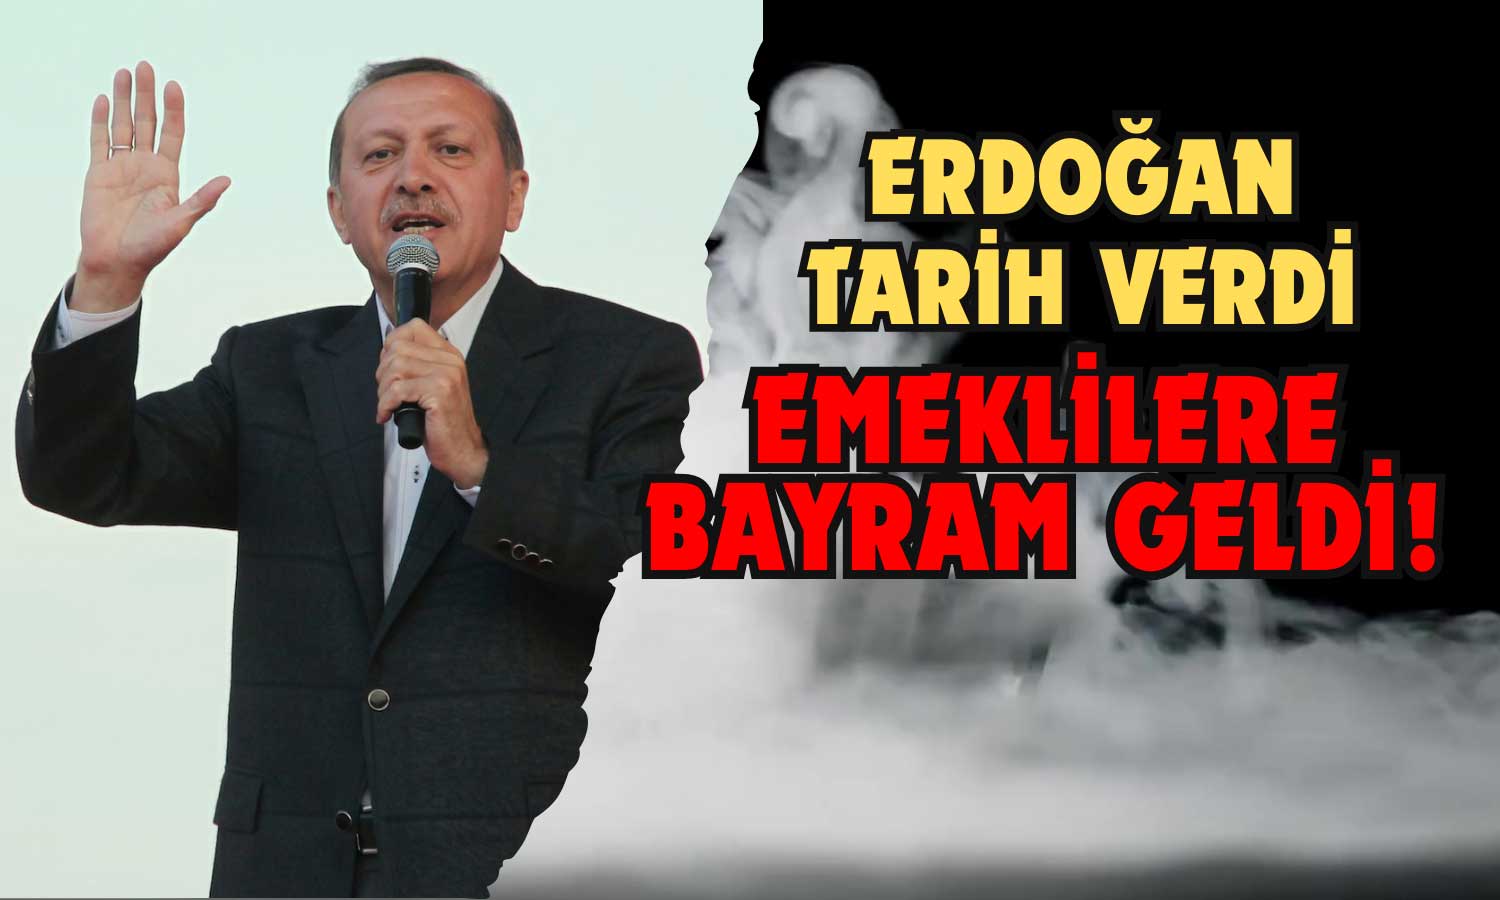 Emeklilere Bayram Geldi! Erdoğan Tarih Verdi